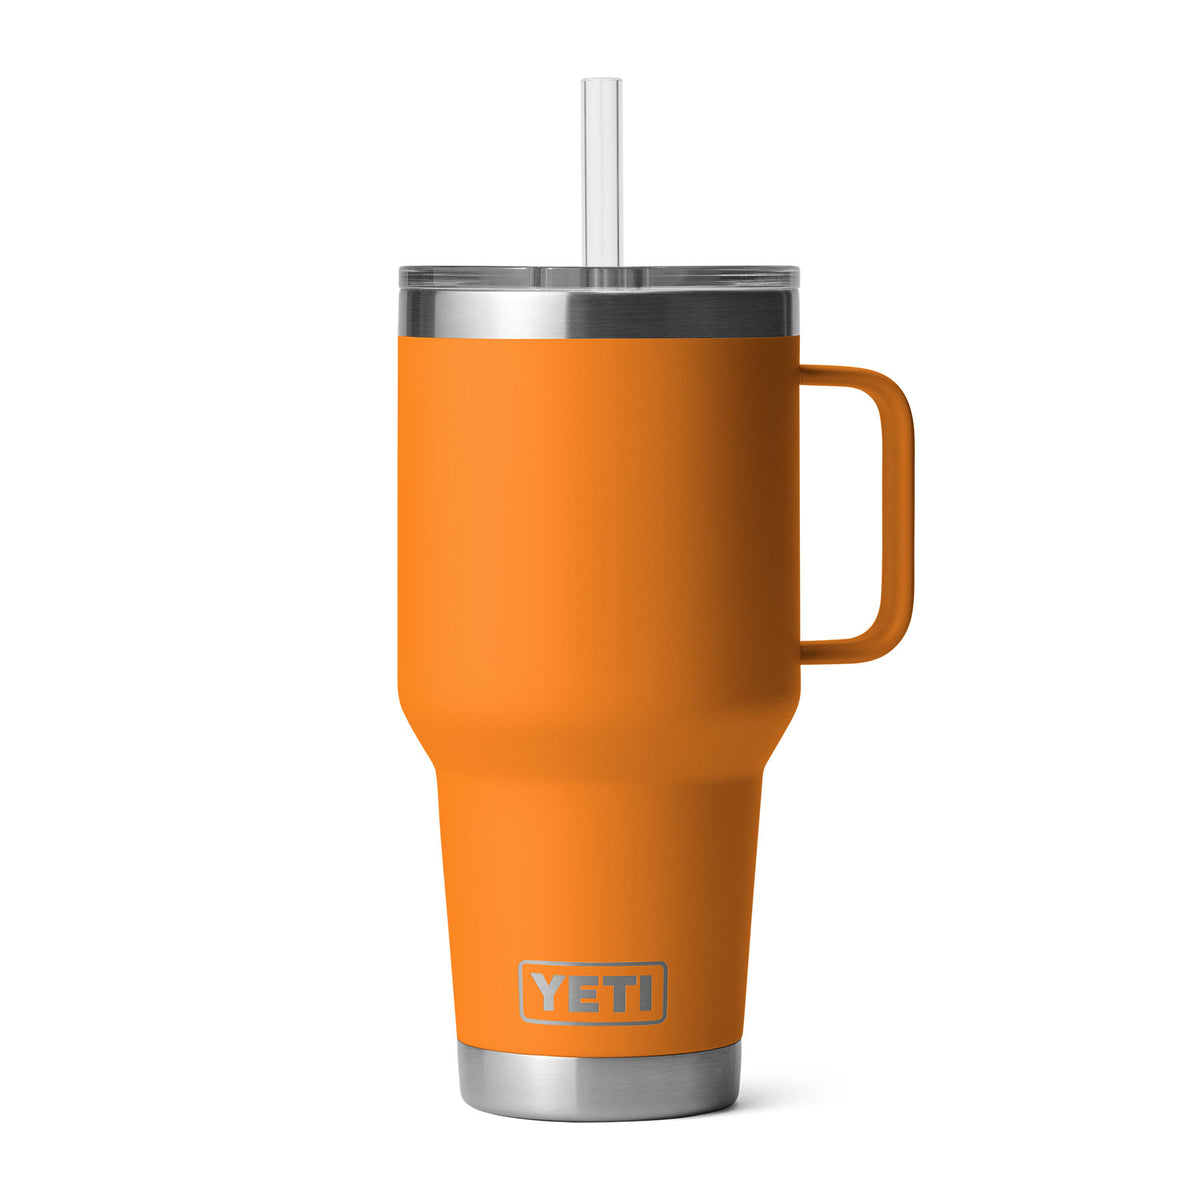 YETI Yeti Rambler 35 oz (994 ml) Mug with Straw Lid 